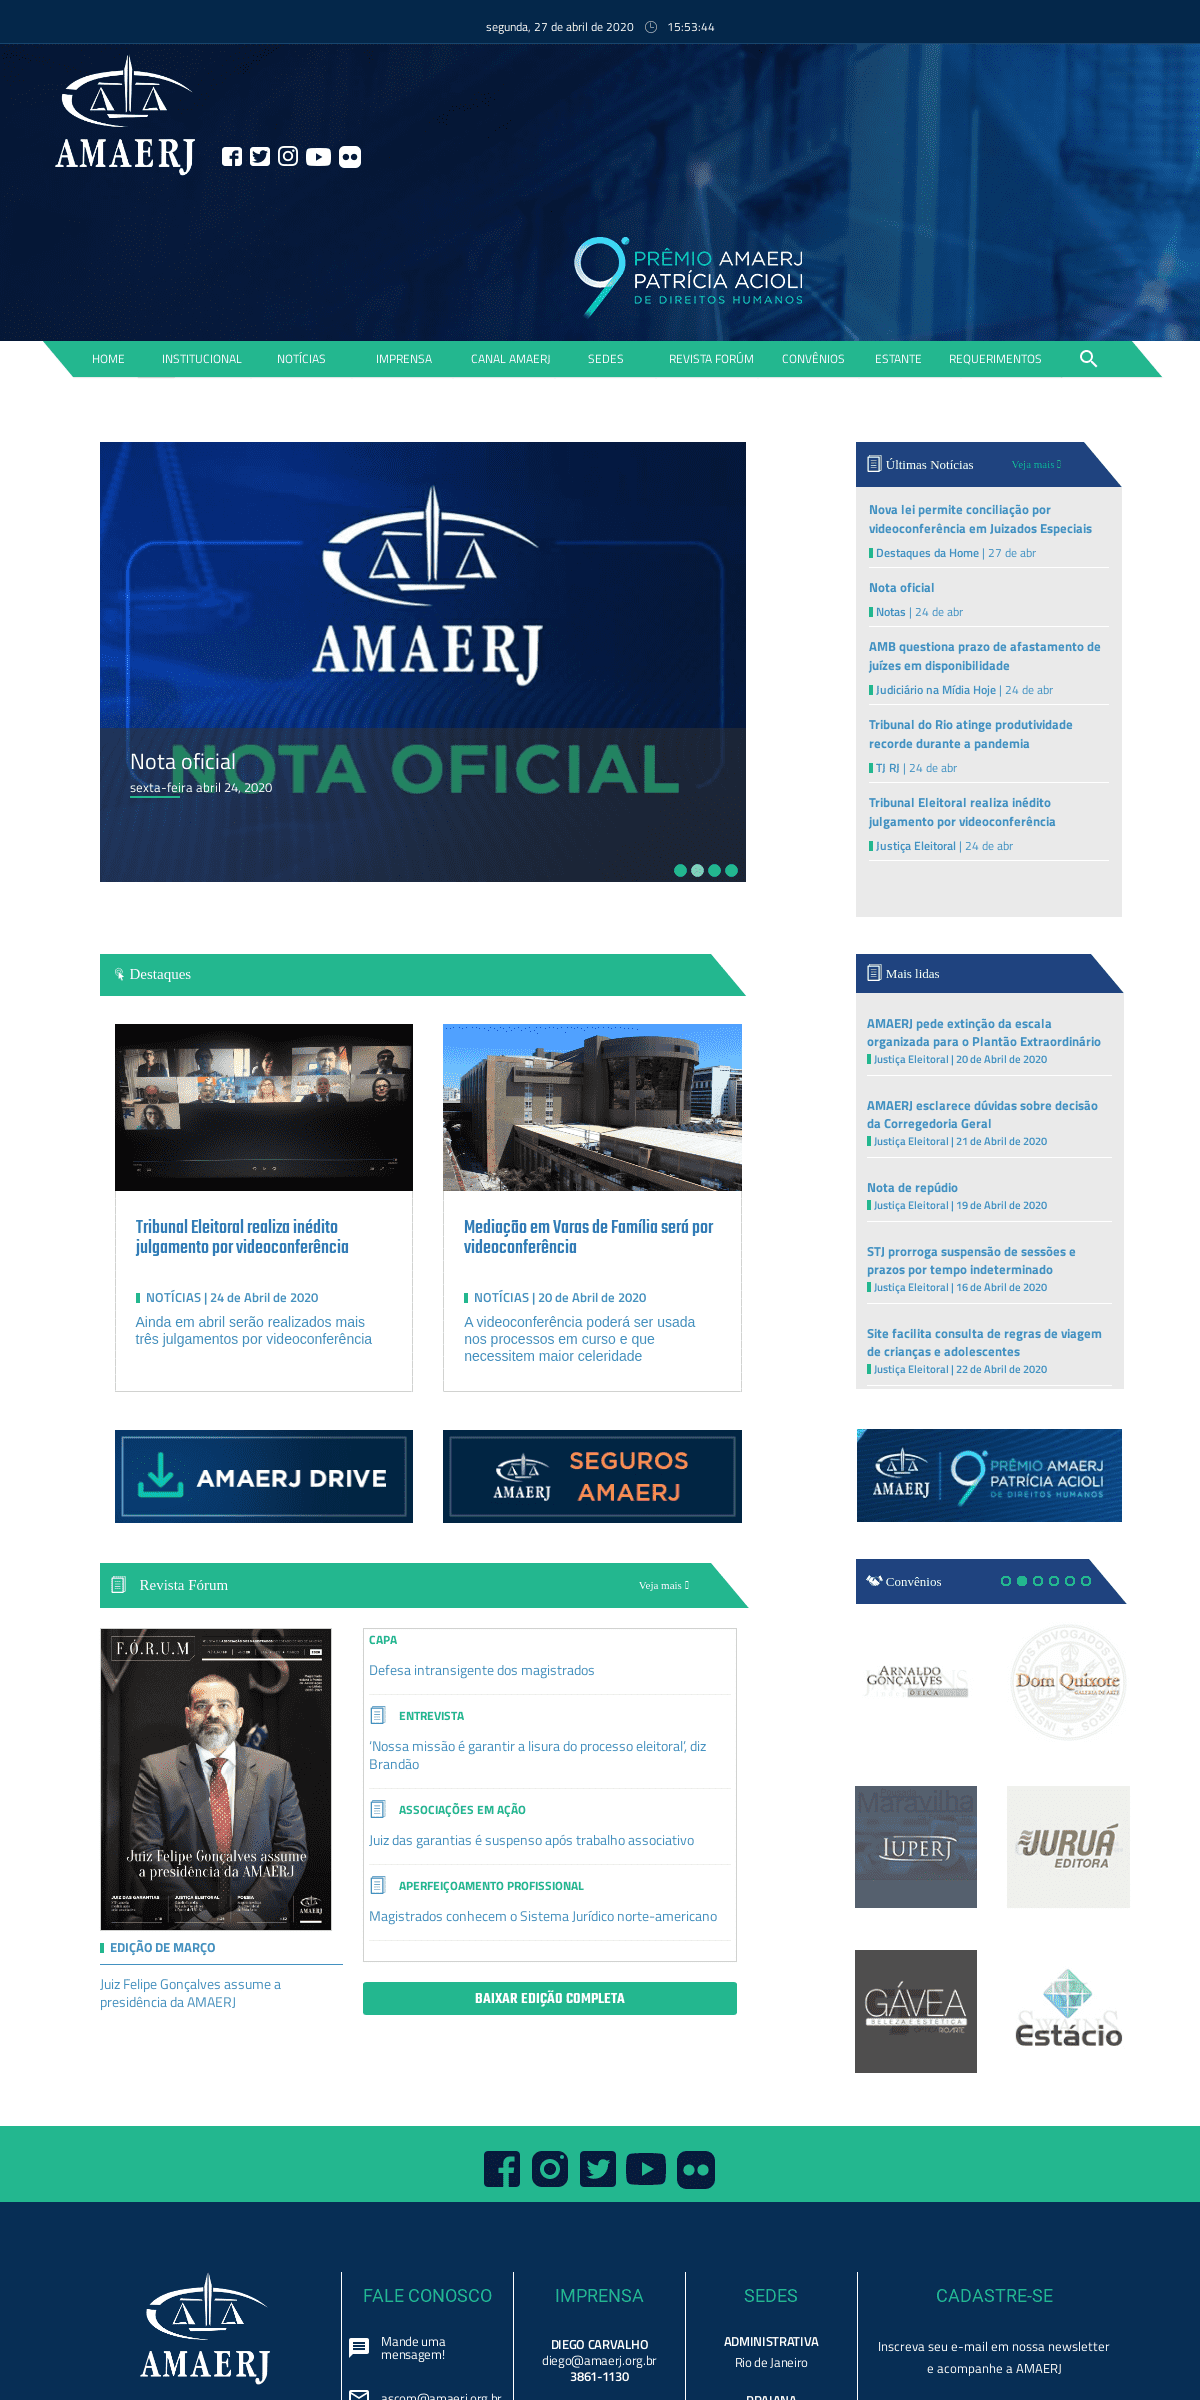 A complete backup of amaerj.org.br